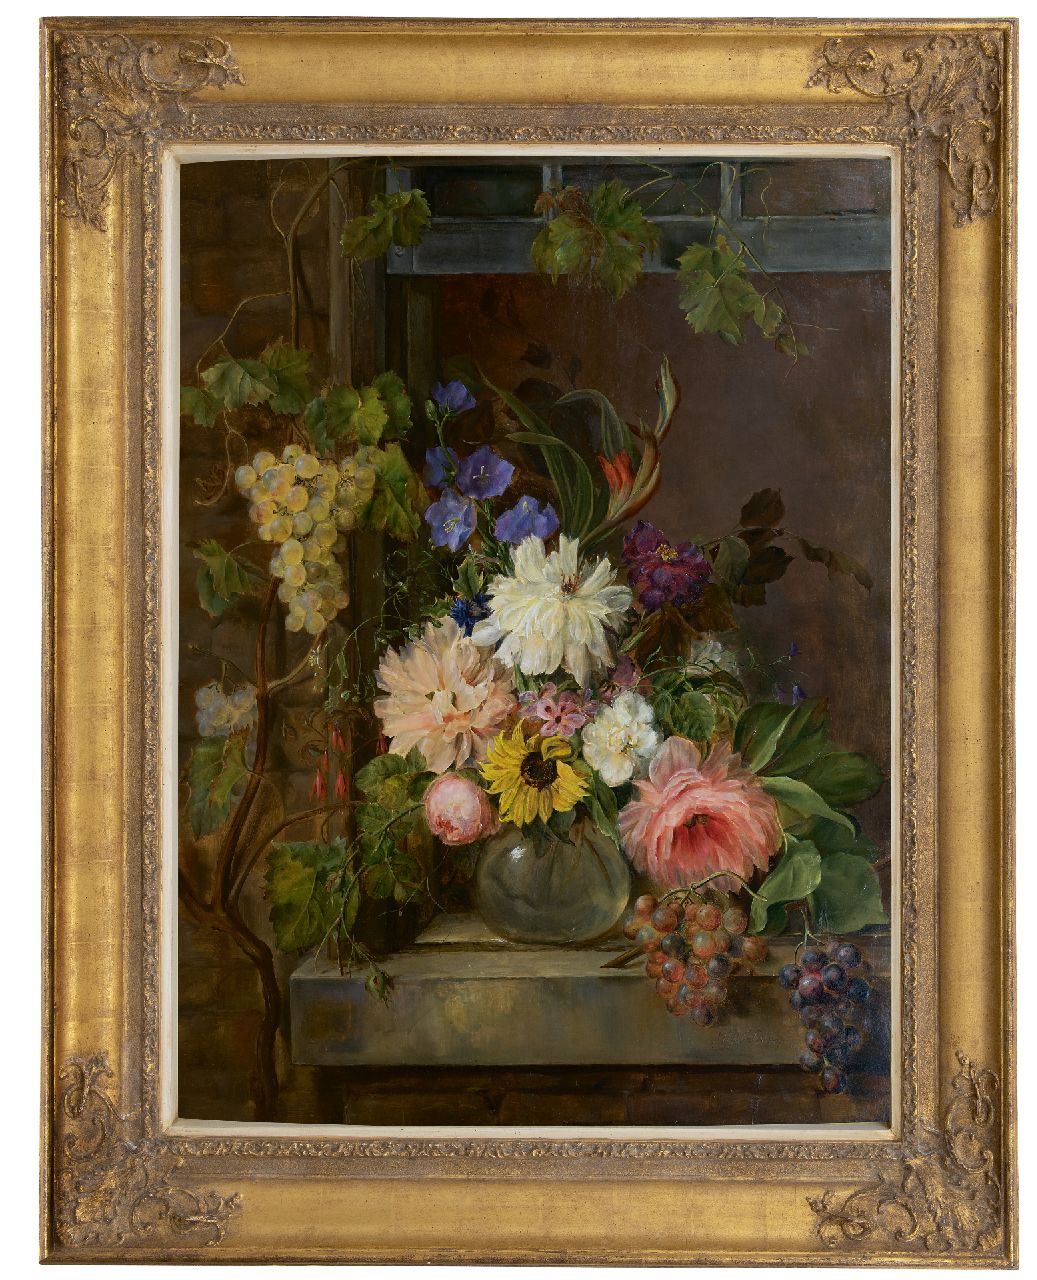 Os G.J.J. van | Georgius Jacobus Johannes van Os | Schilderijen te koop aangeboden | Stilleven met bloemen en druiven, olieverf op paneel 97,0 x 75,5 cm, gesigneerd rechtsonder en gedateerd 1809